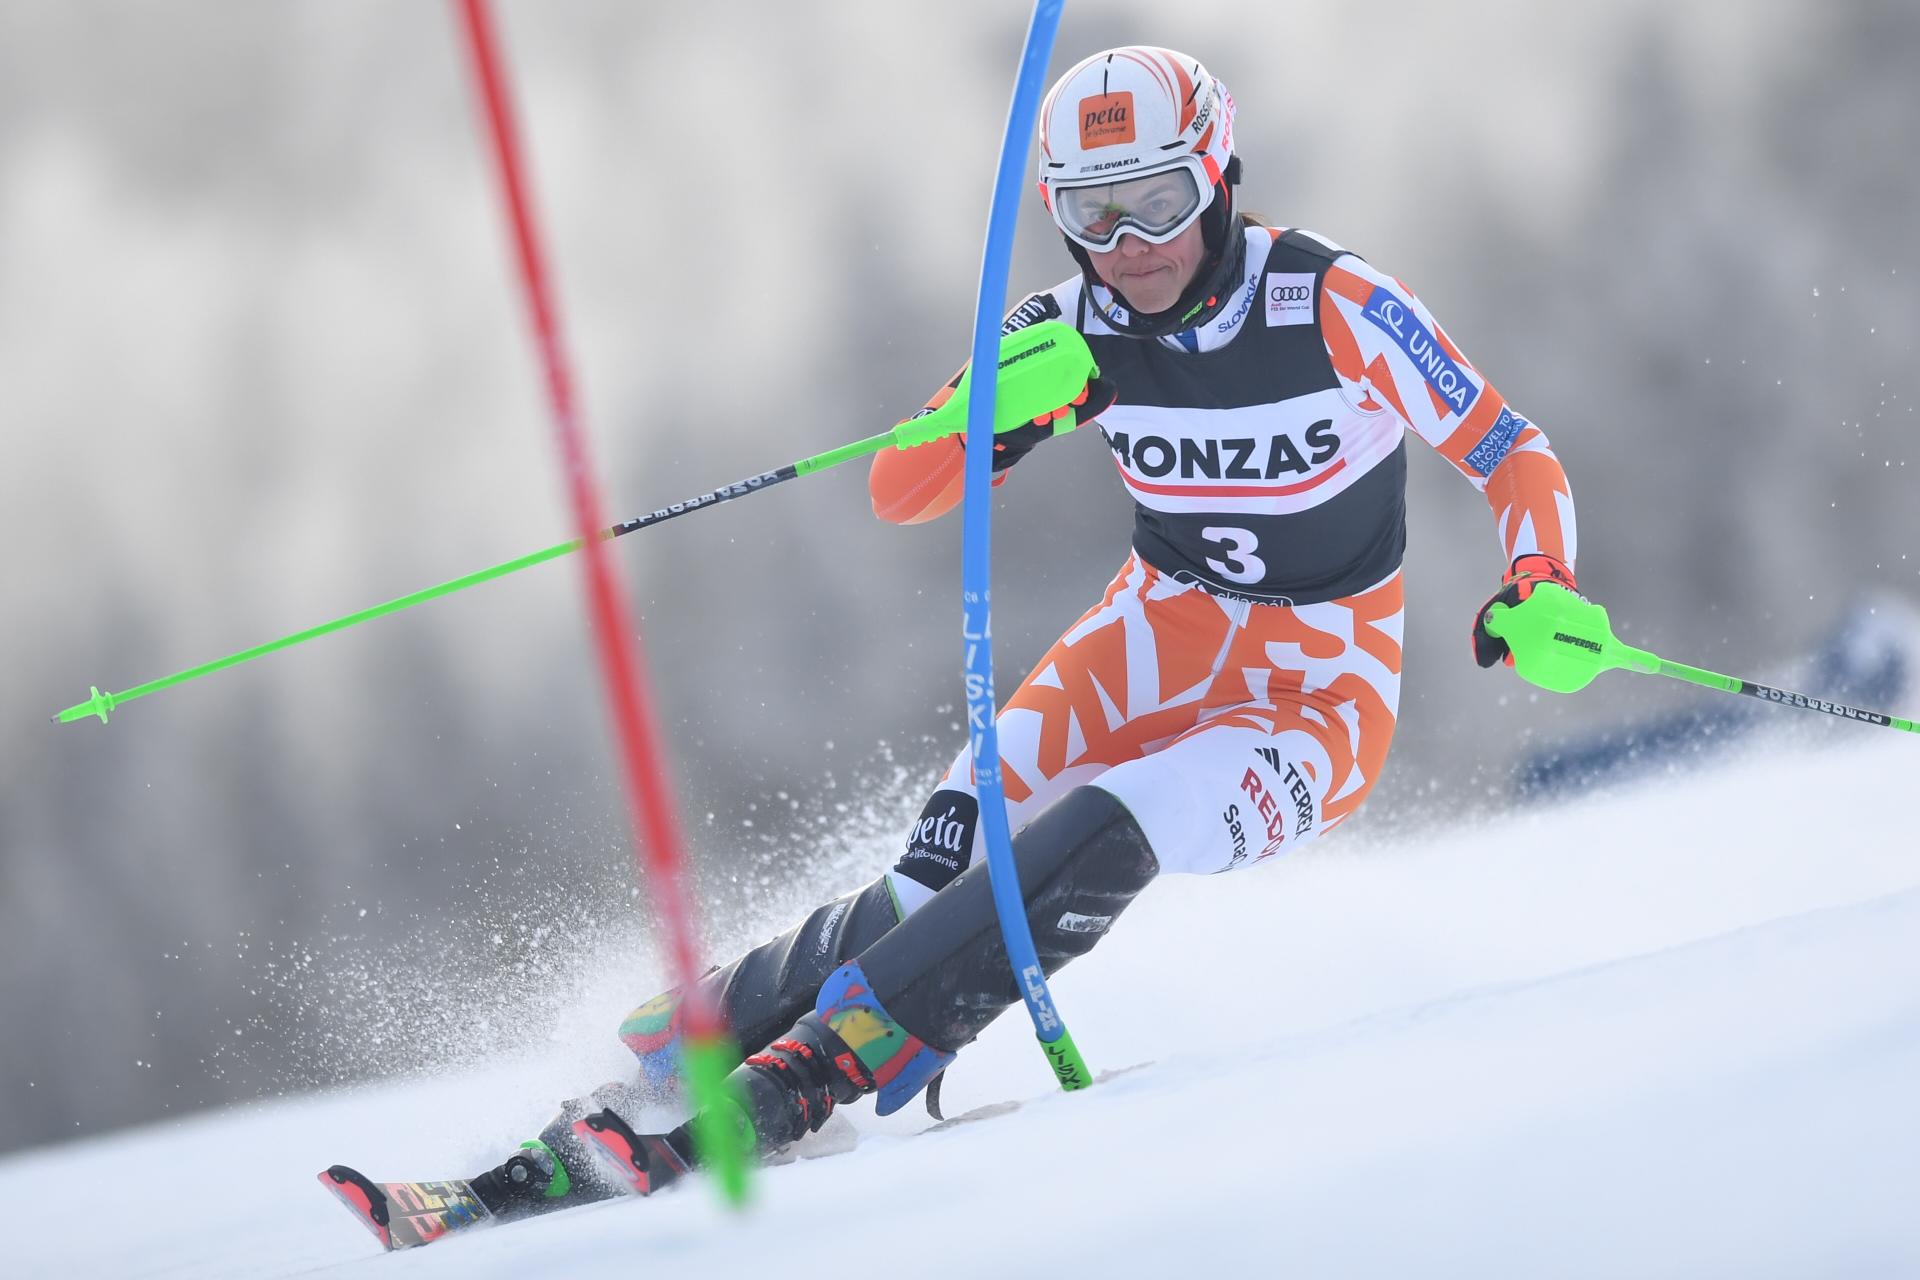 Vlhová je po prvom kole slalomu Svetového pohára tretia, viedla Shiffrinová